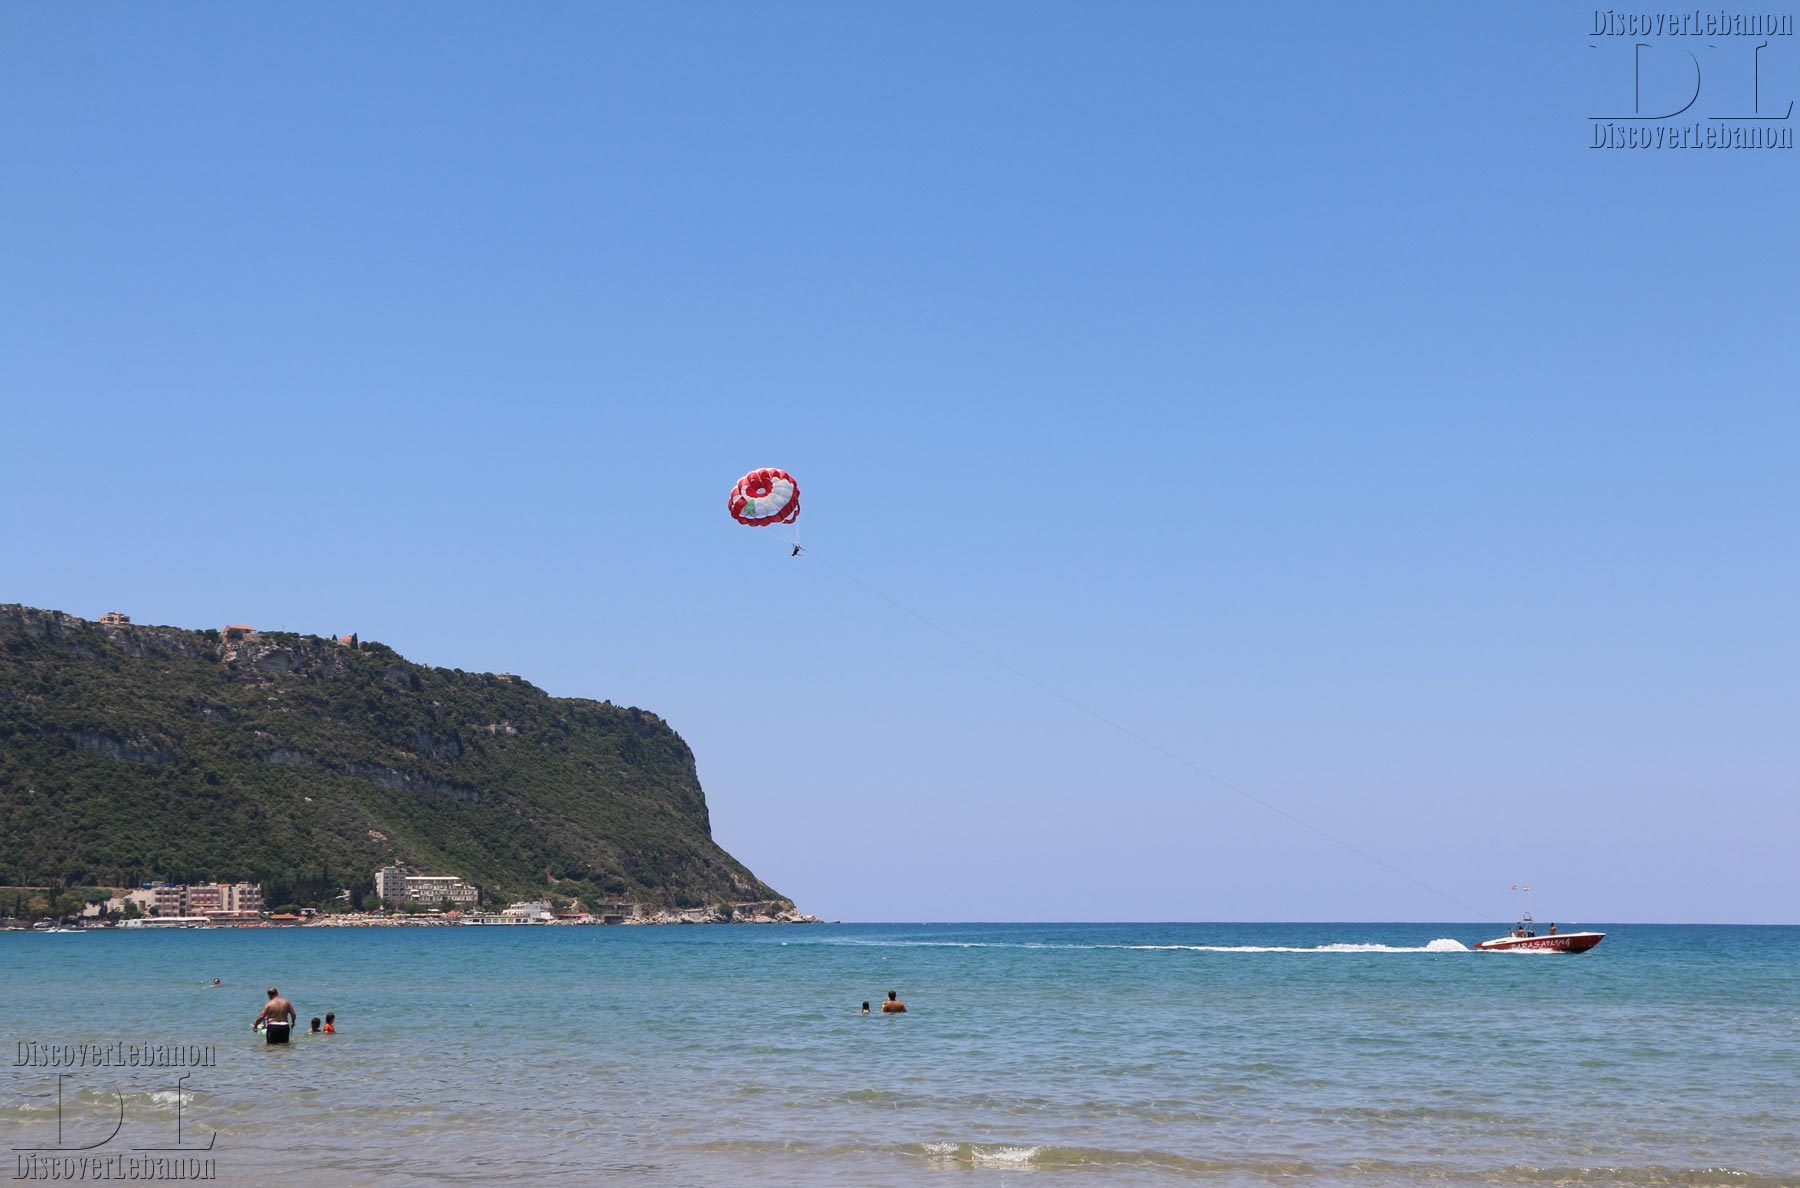 Ras Chekka parasailing and ski nautique beaches Lebanon